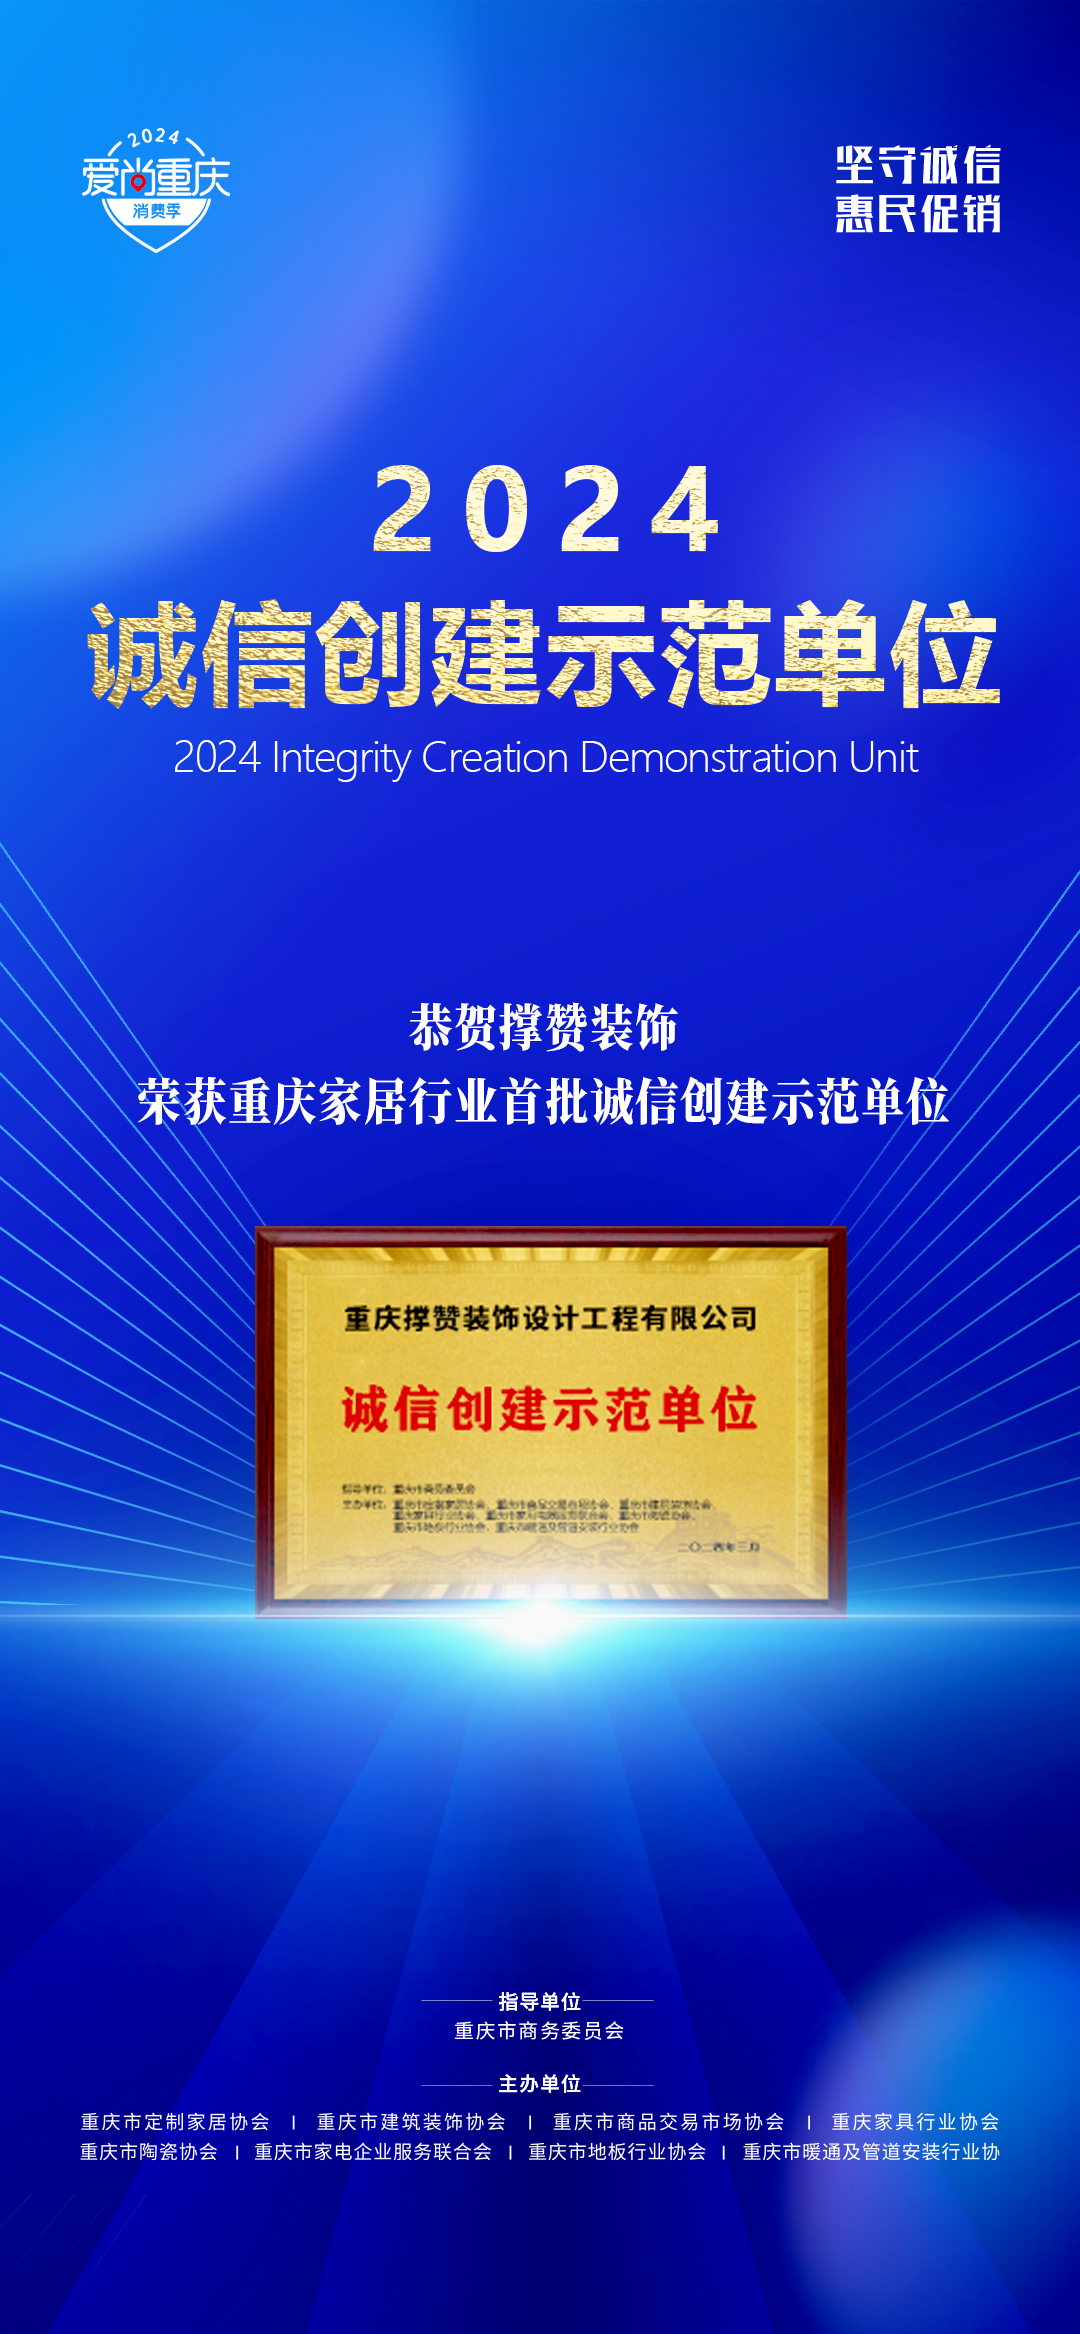 撑赞装饰荣获“首批重庆家居行业诚信示范单位”荣誉称号。